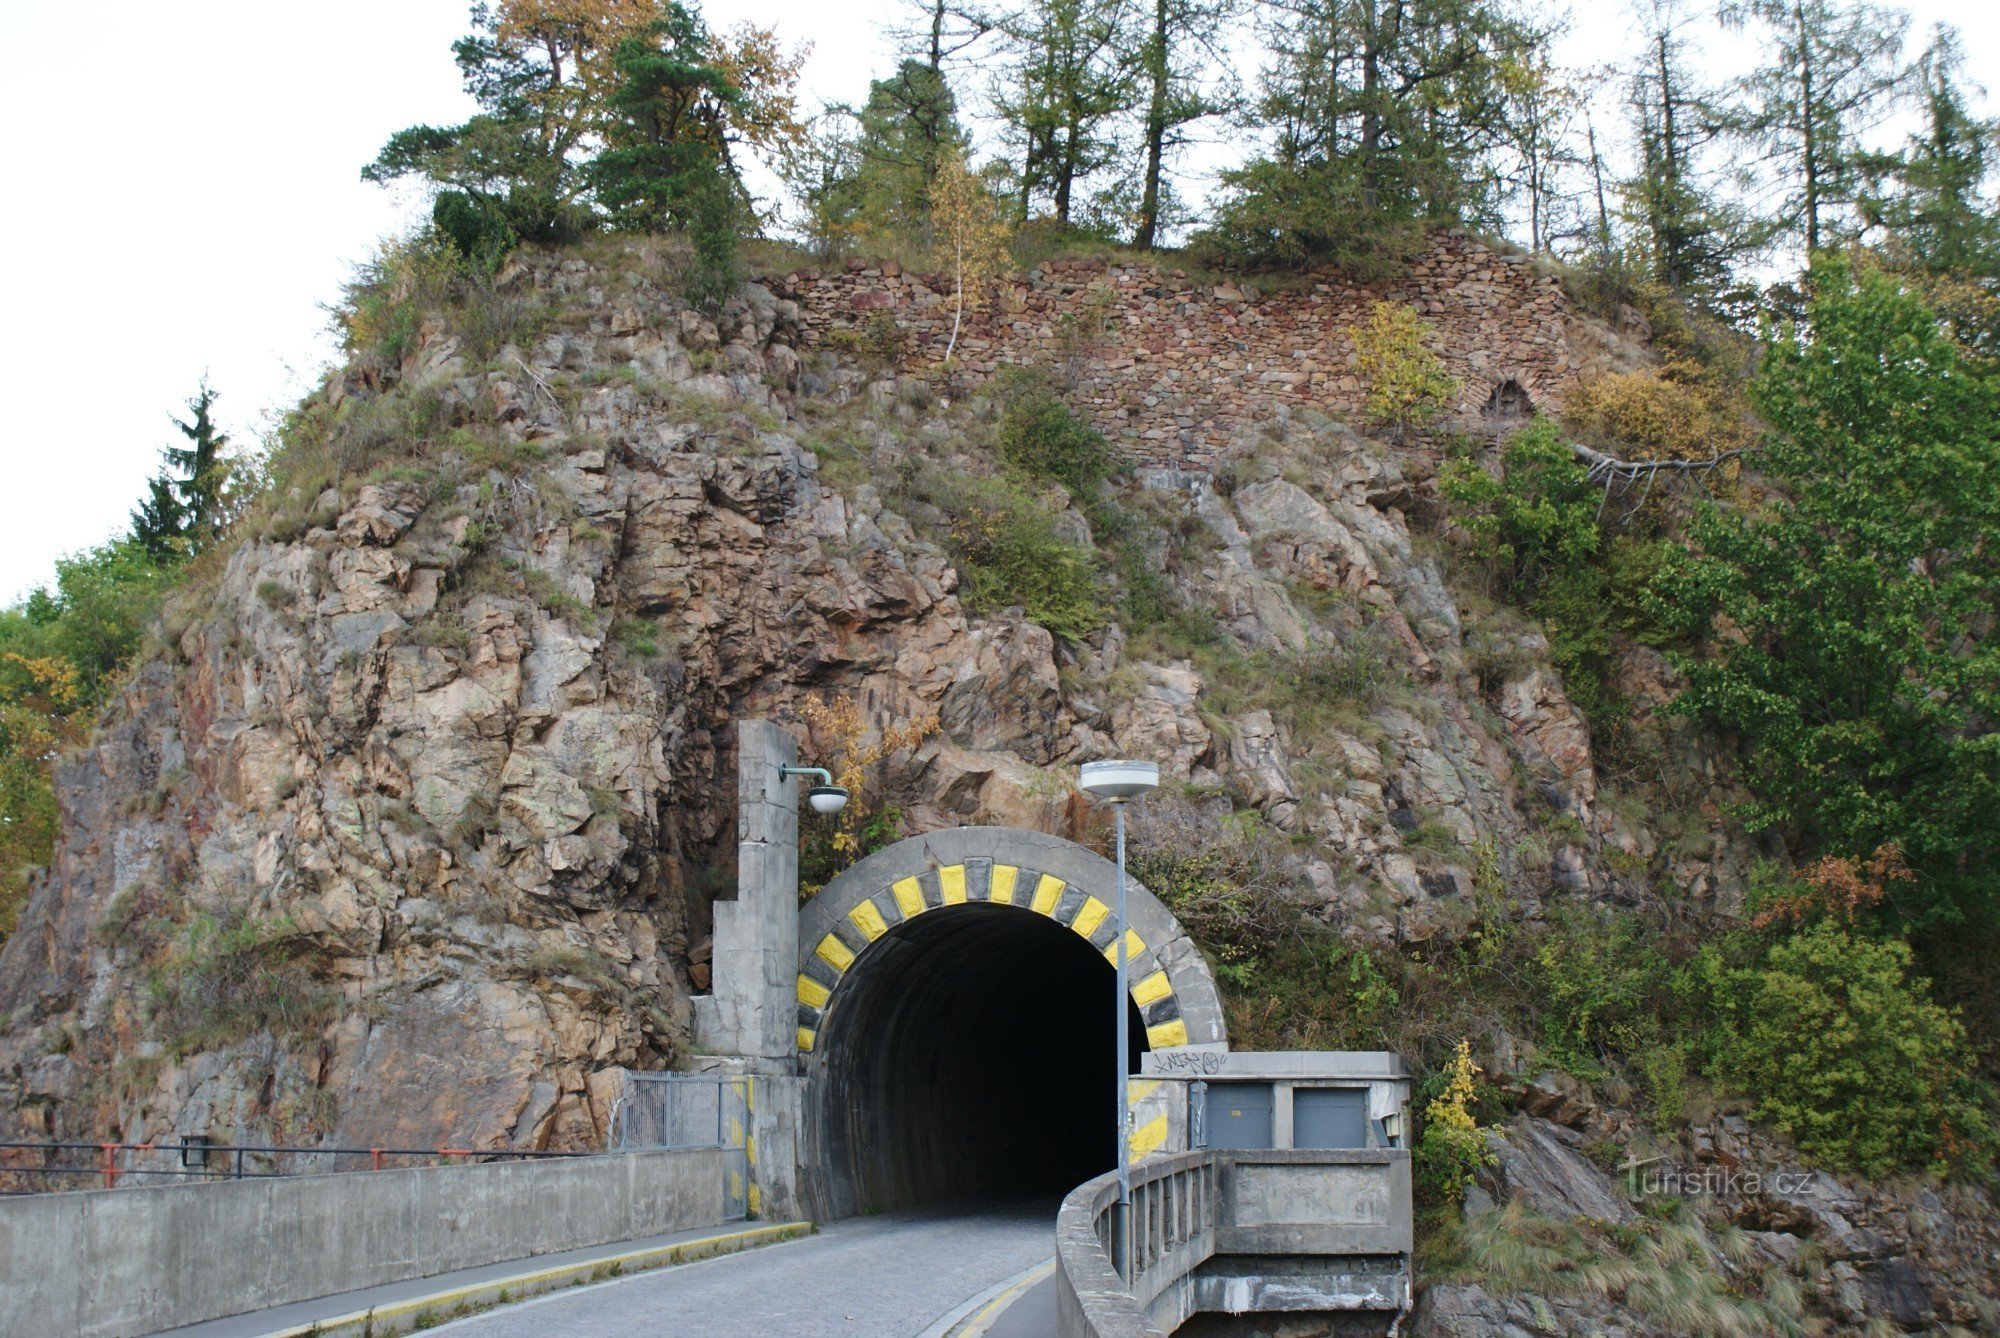 castelul de deasupra tunelului rutier